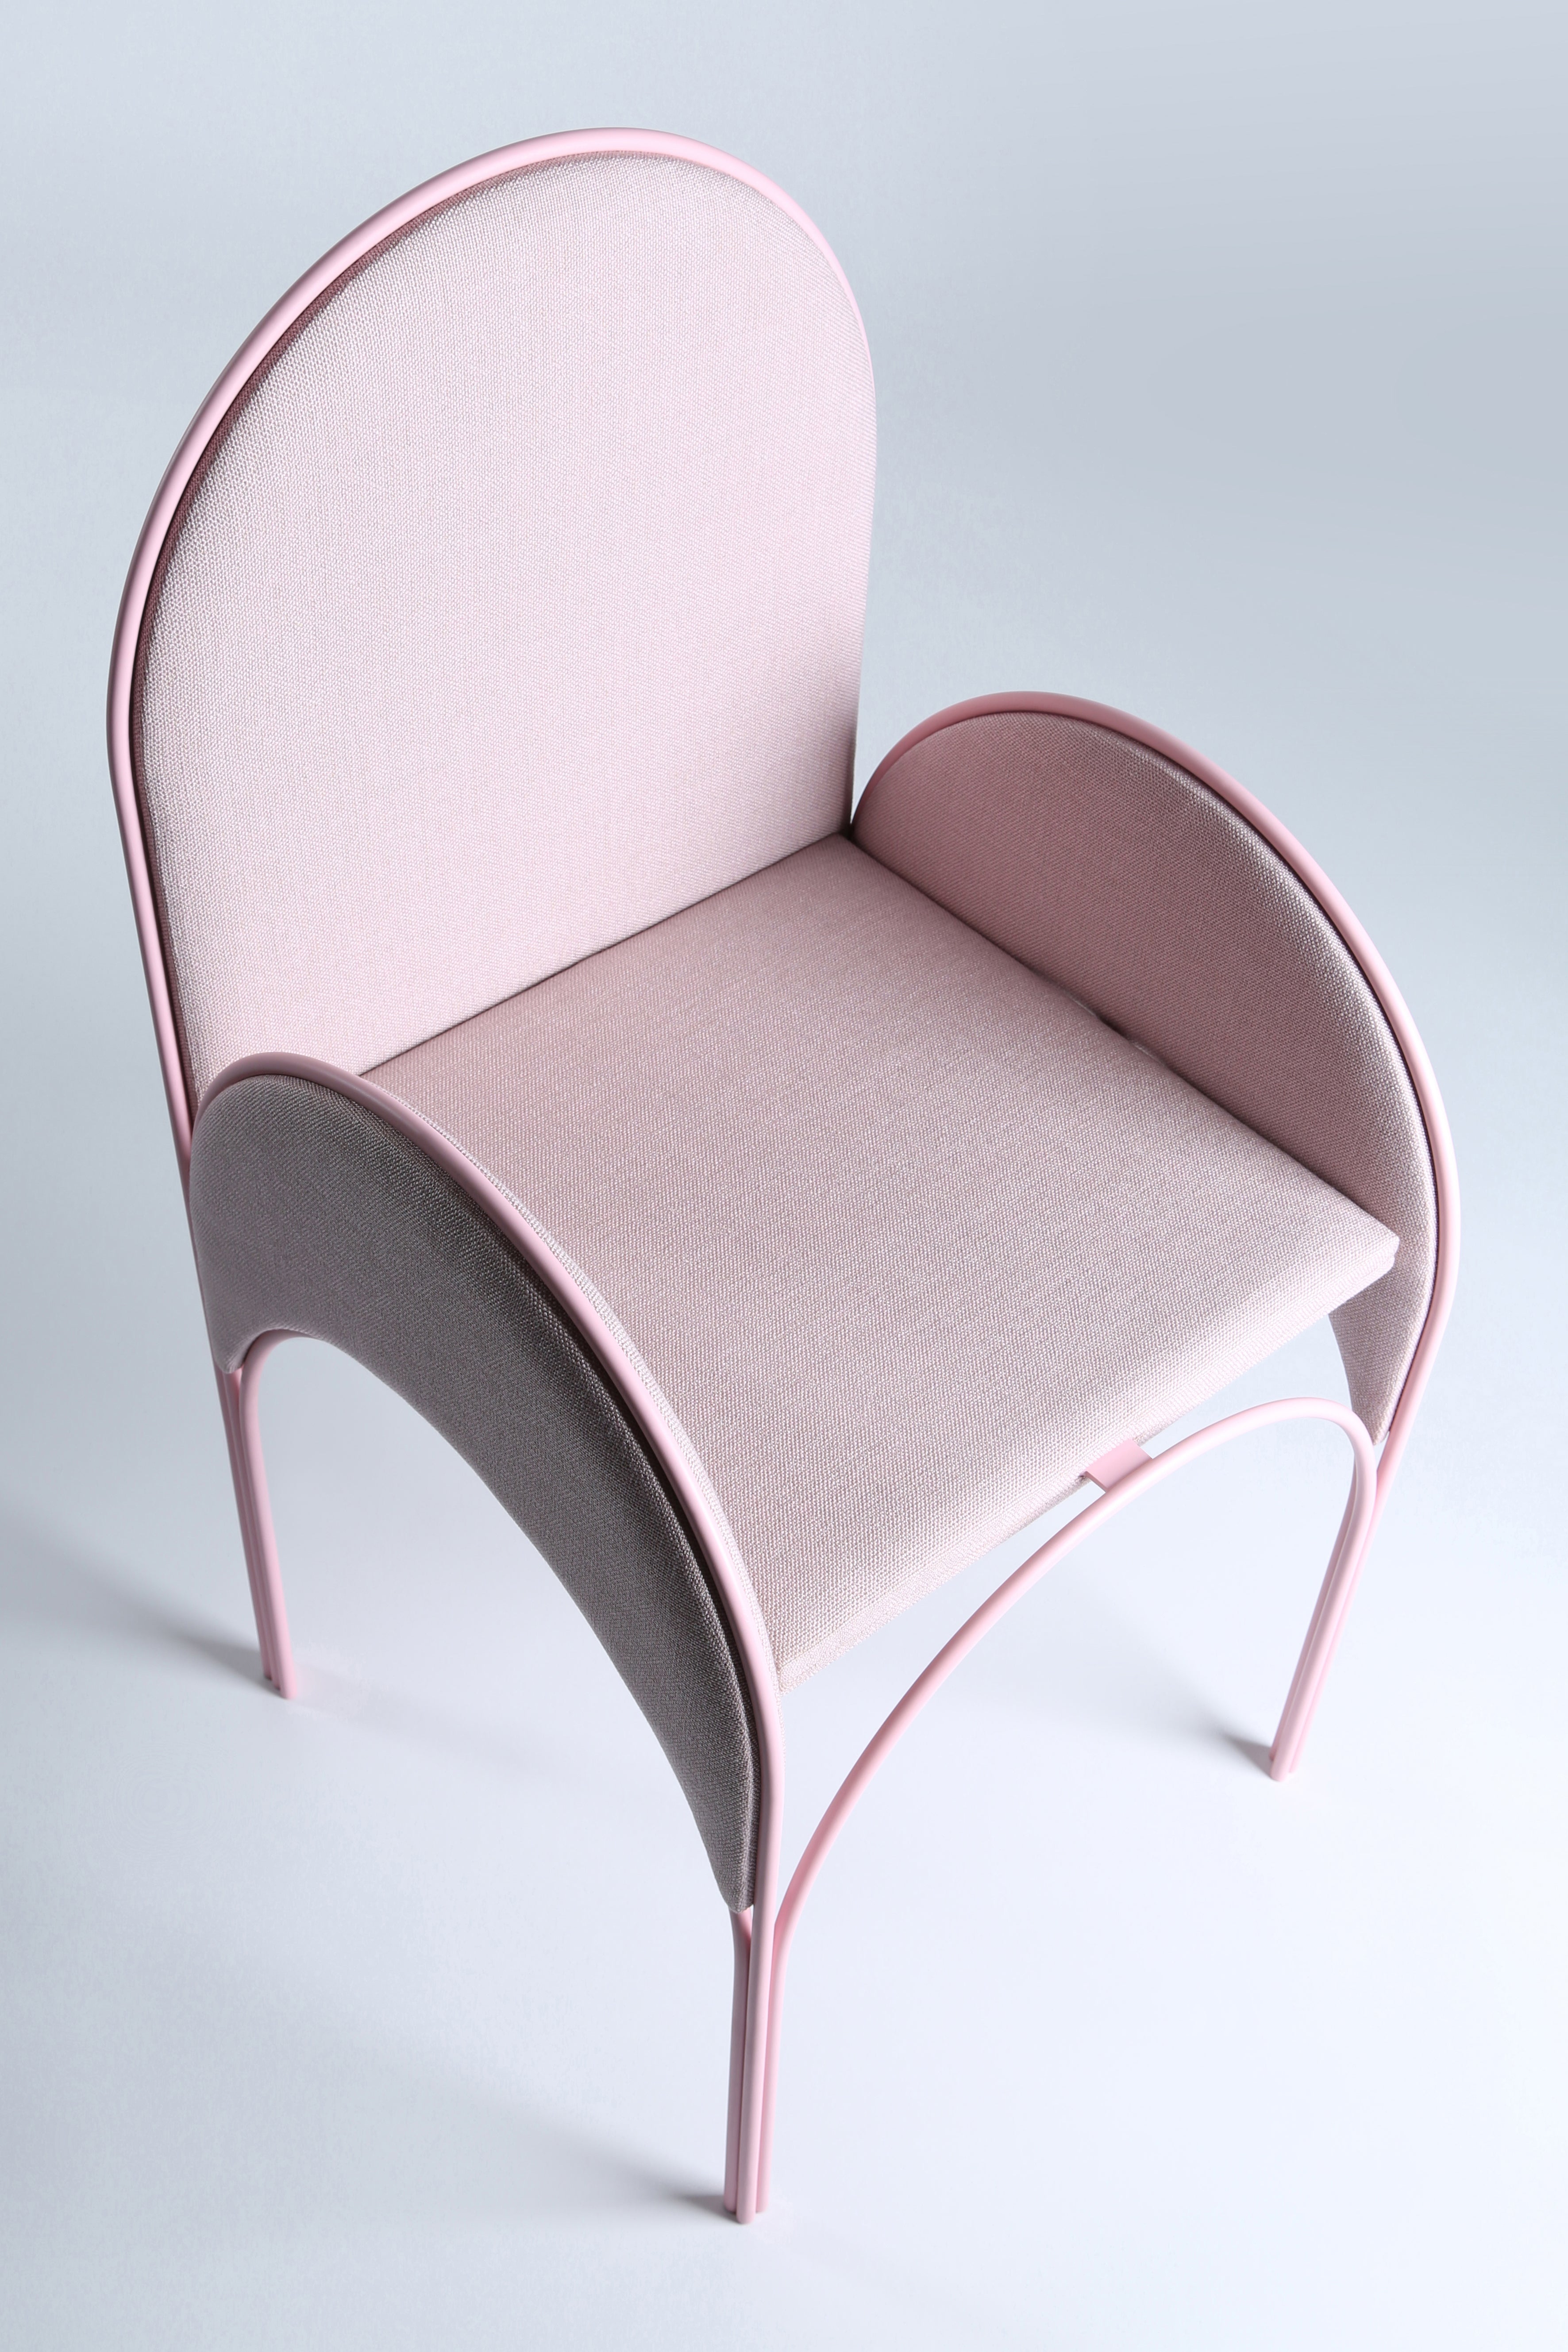 Hawa Beirut Pink Chair